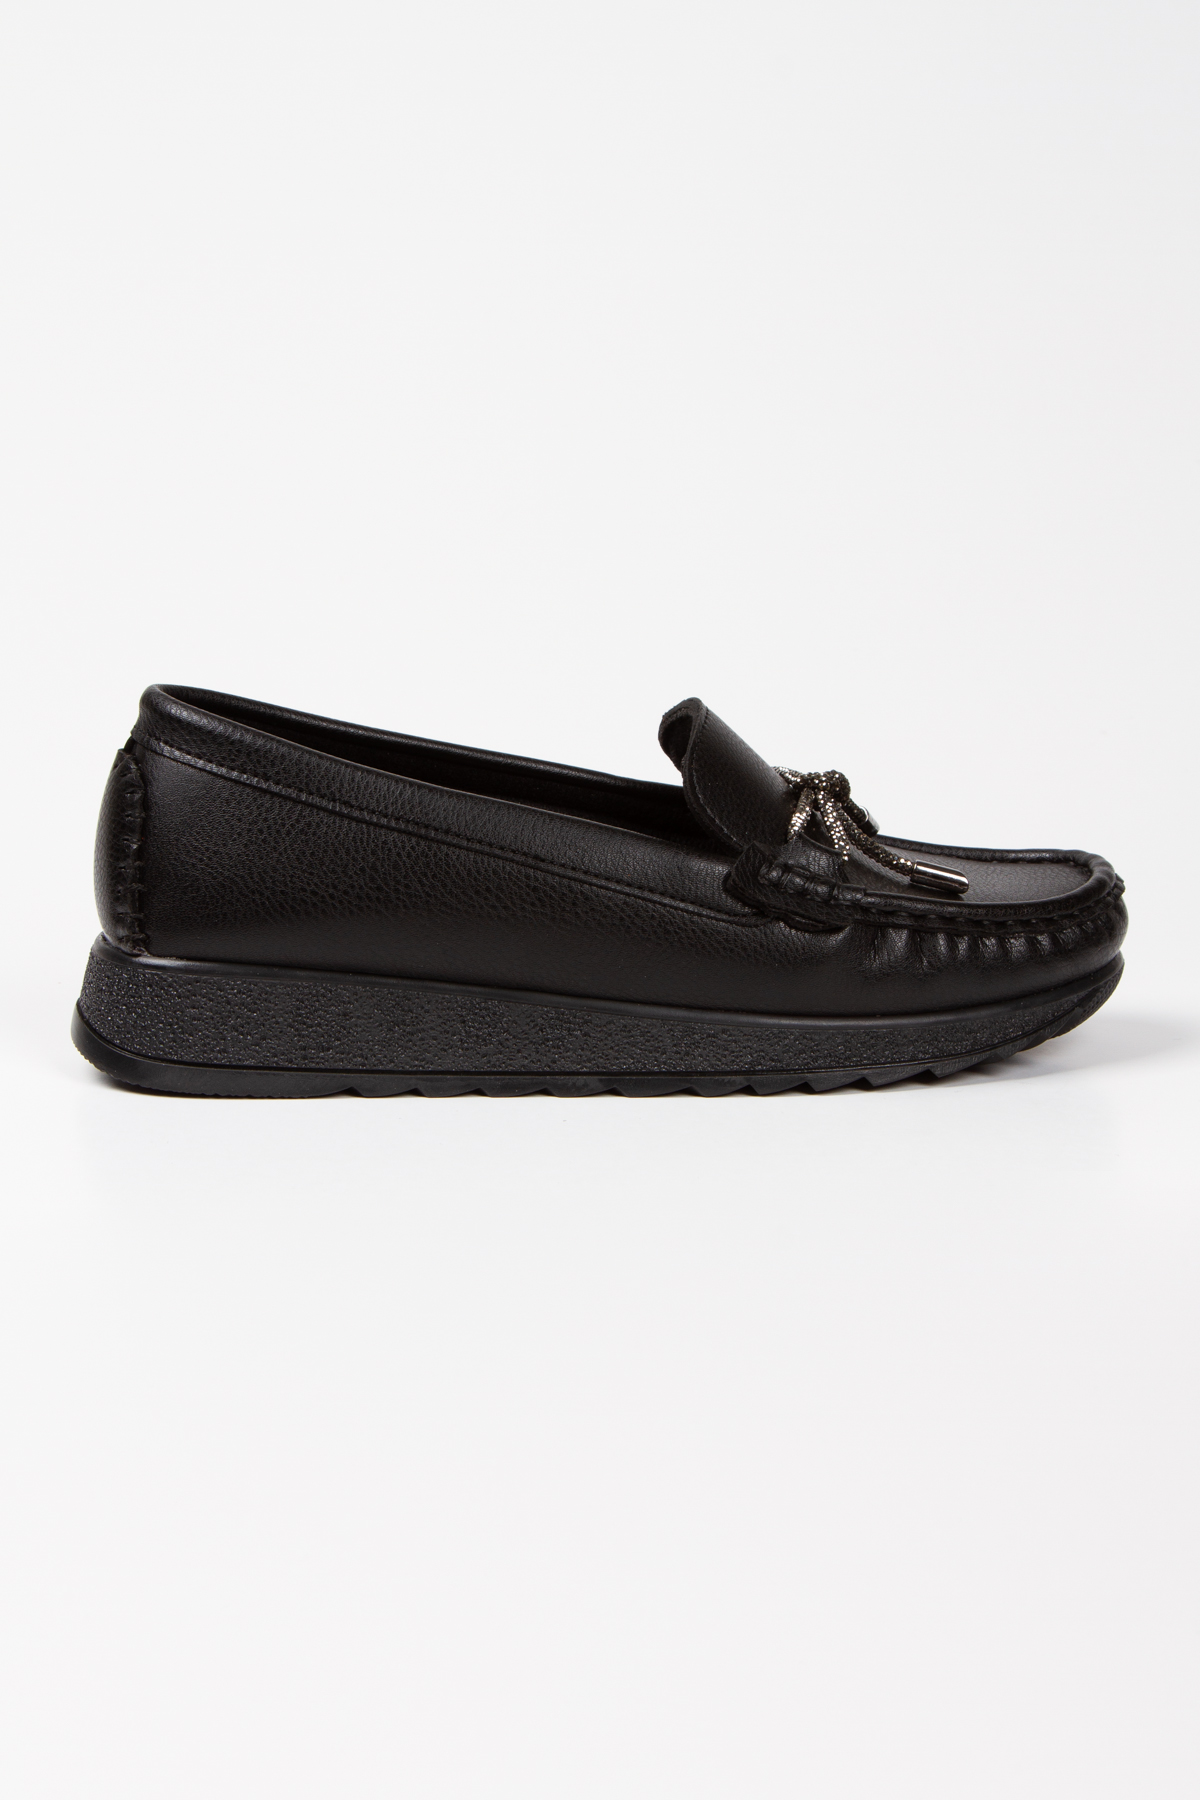 Siyah Suni Deri Taş Bağcık Rahat Loafer Ayakkabı